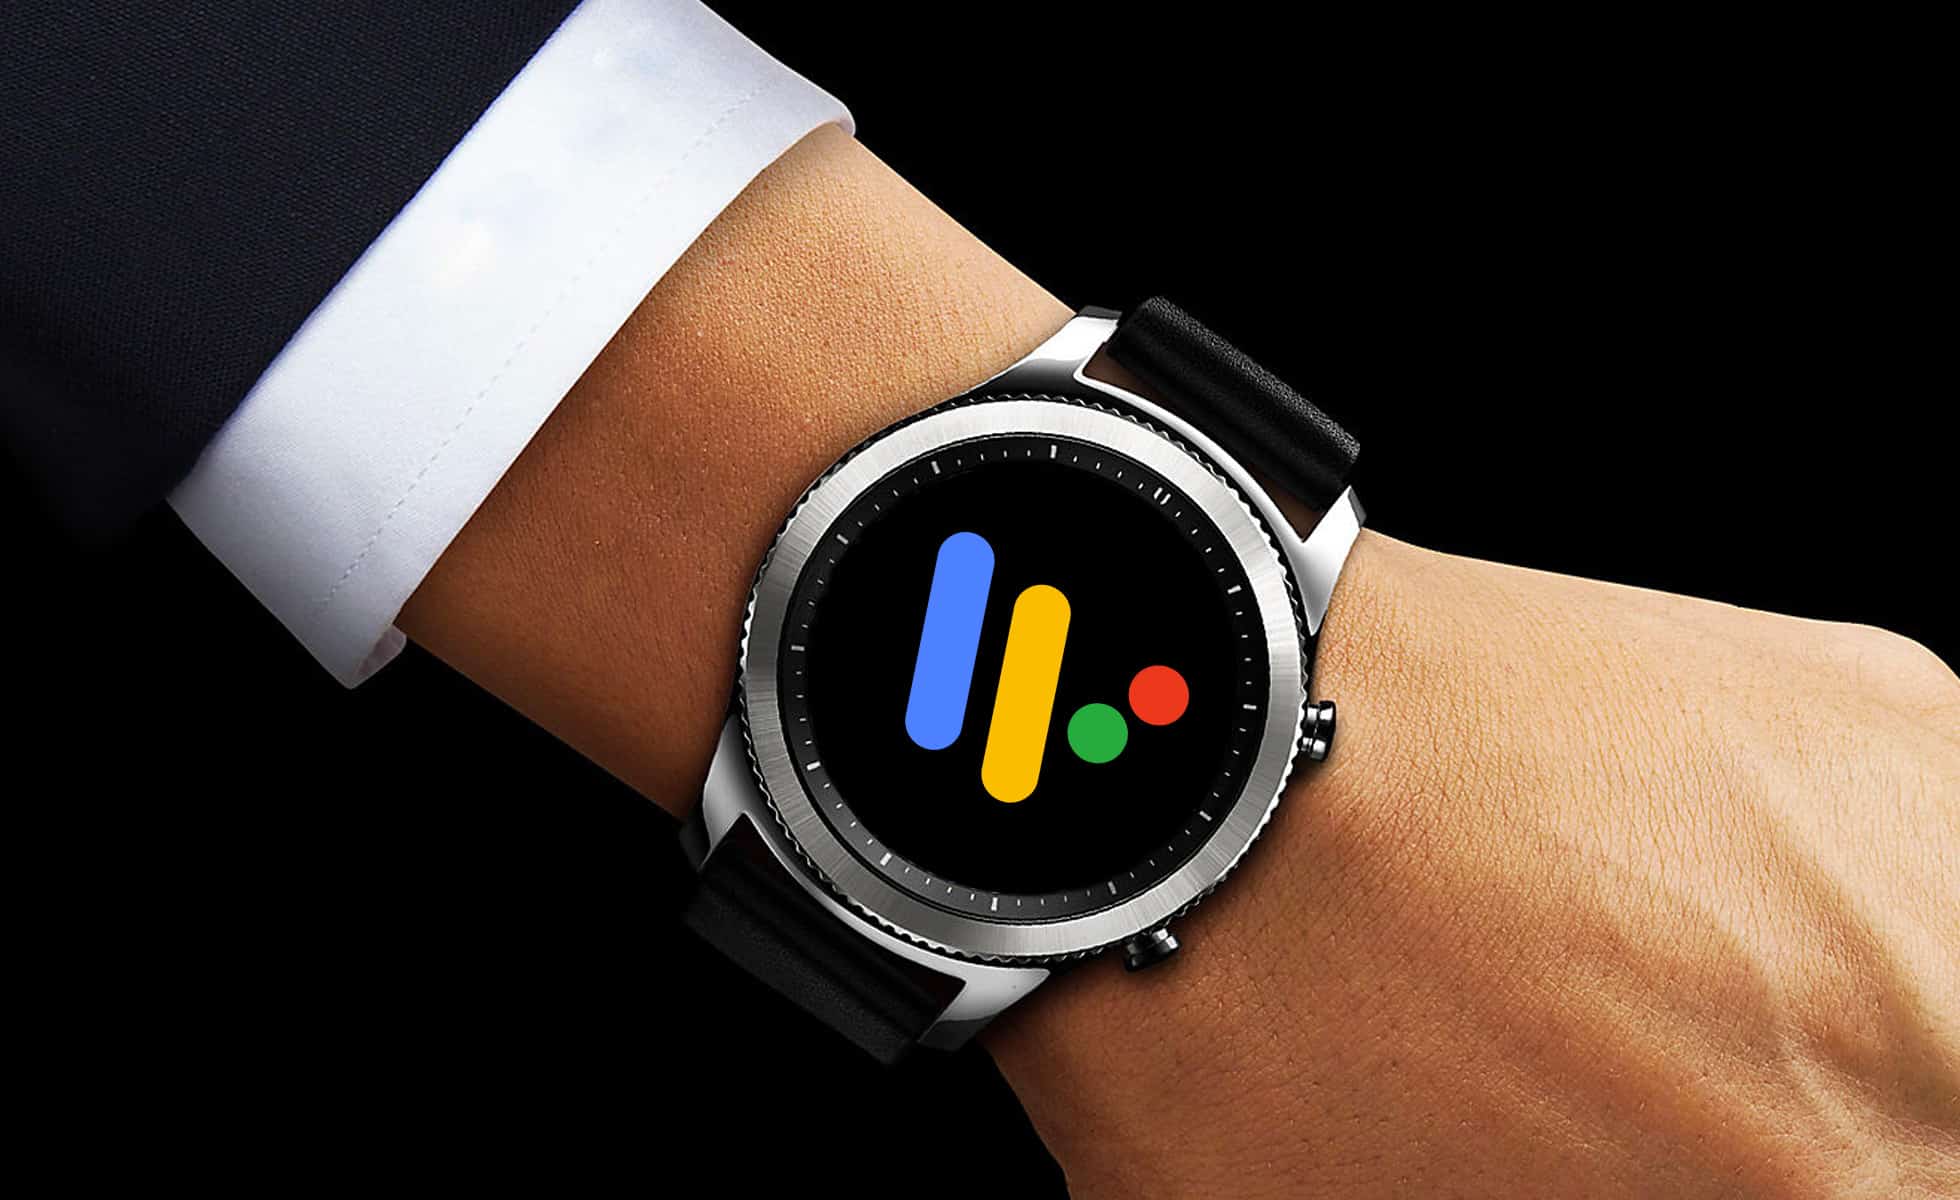 Une montre connectée sous Wear OS chez Samsung en 2018 ?